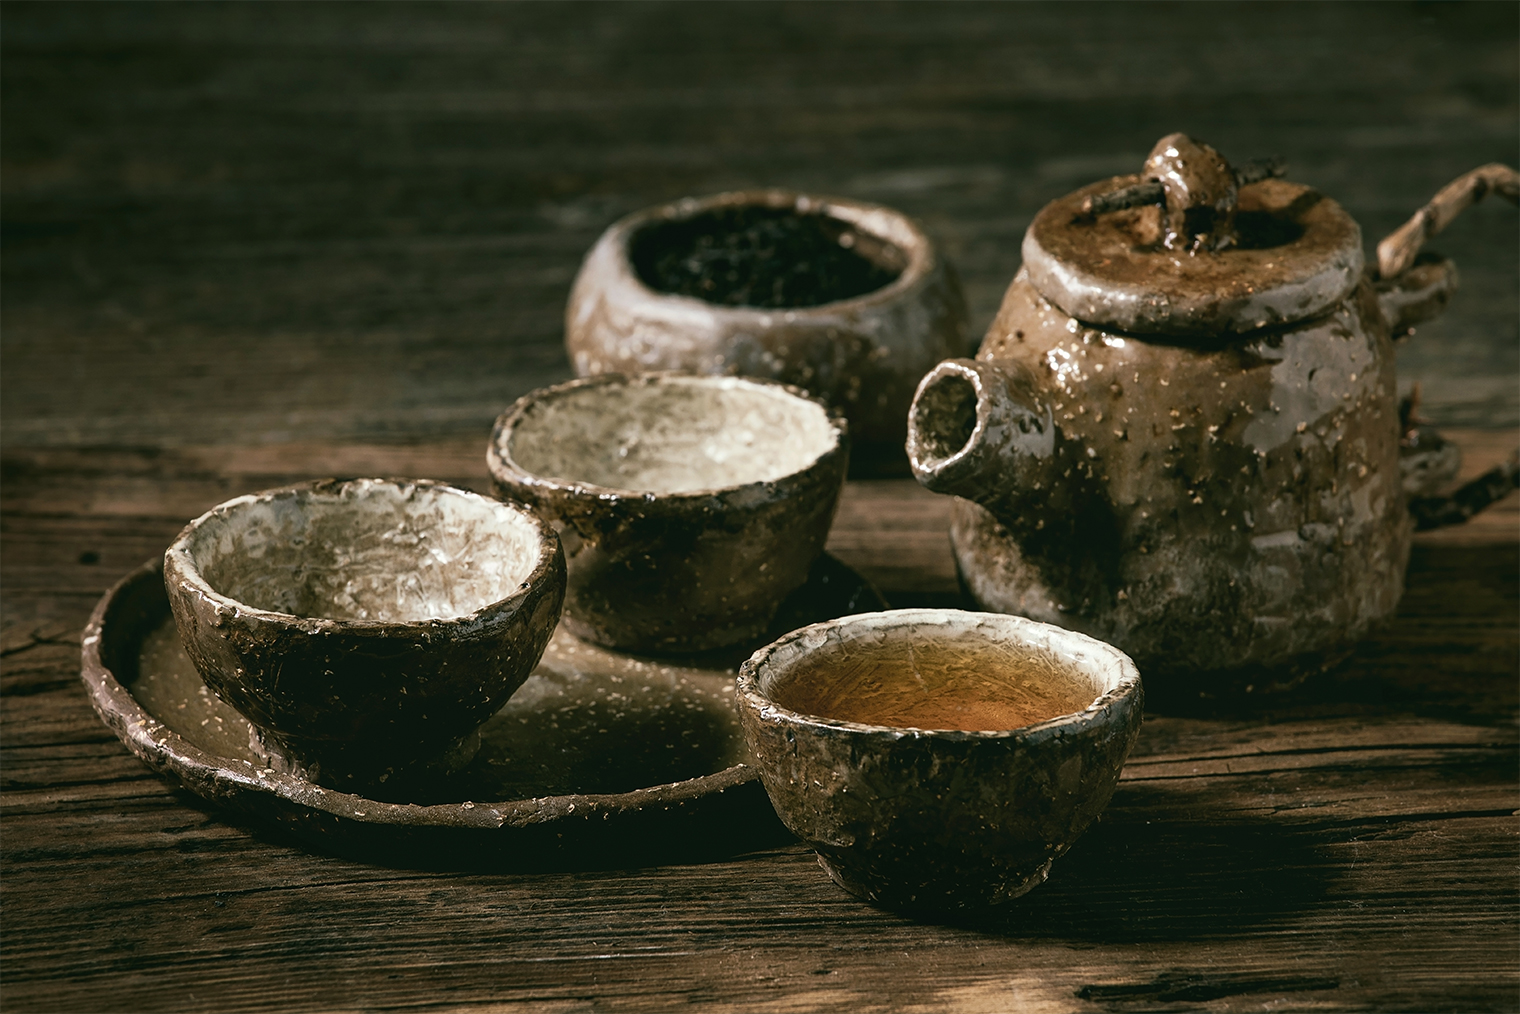 Ваби⁠-⁠саби — это красота в несовершенстве: неровные чашки, прекрасные именно тем, что они неровные. Фотография: Natasha Breen / Shutterstock